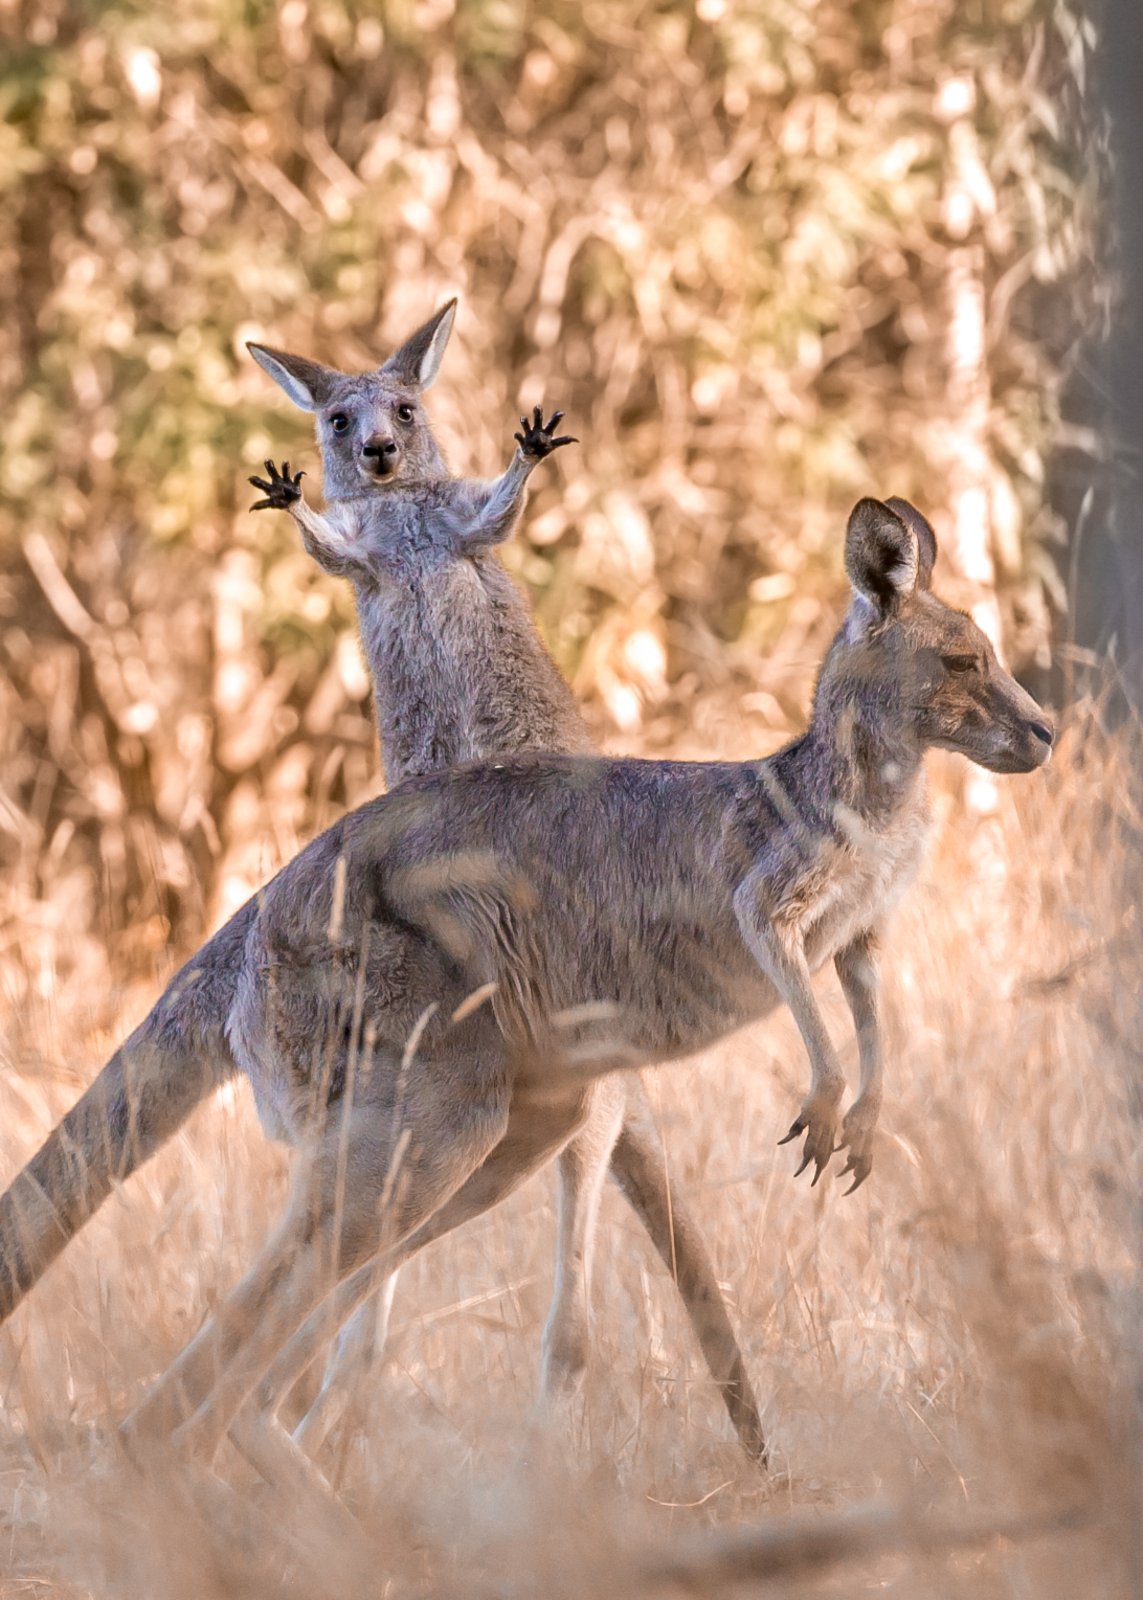 a kangroo and joey mess around.